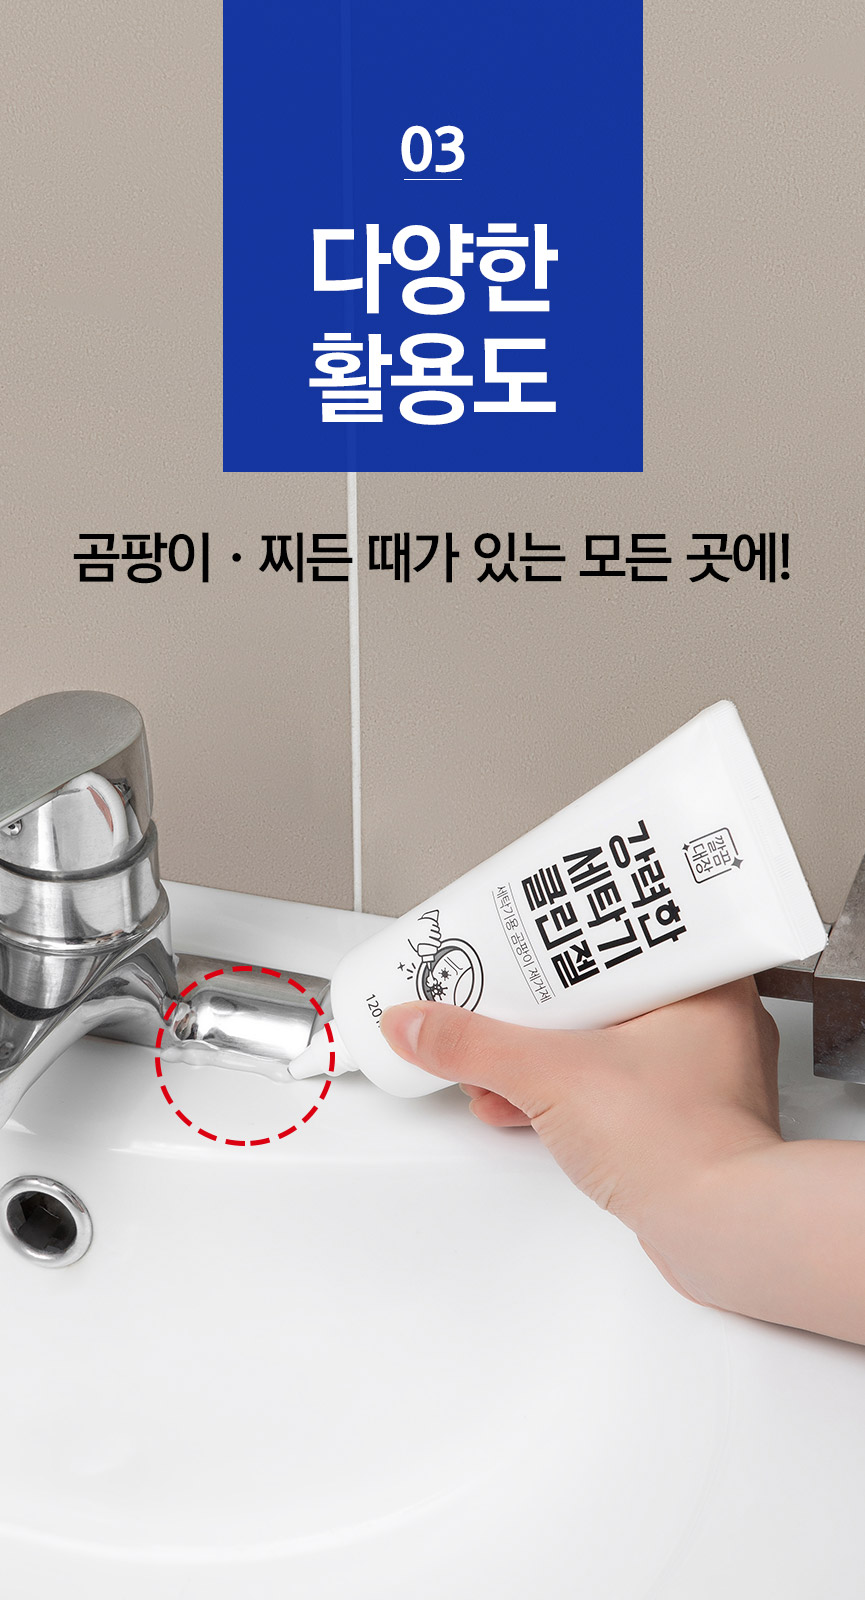 韓國食品-[Cleanboss] Powerful washing machine Clean gel